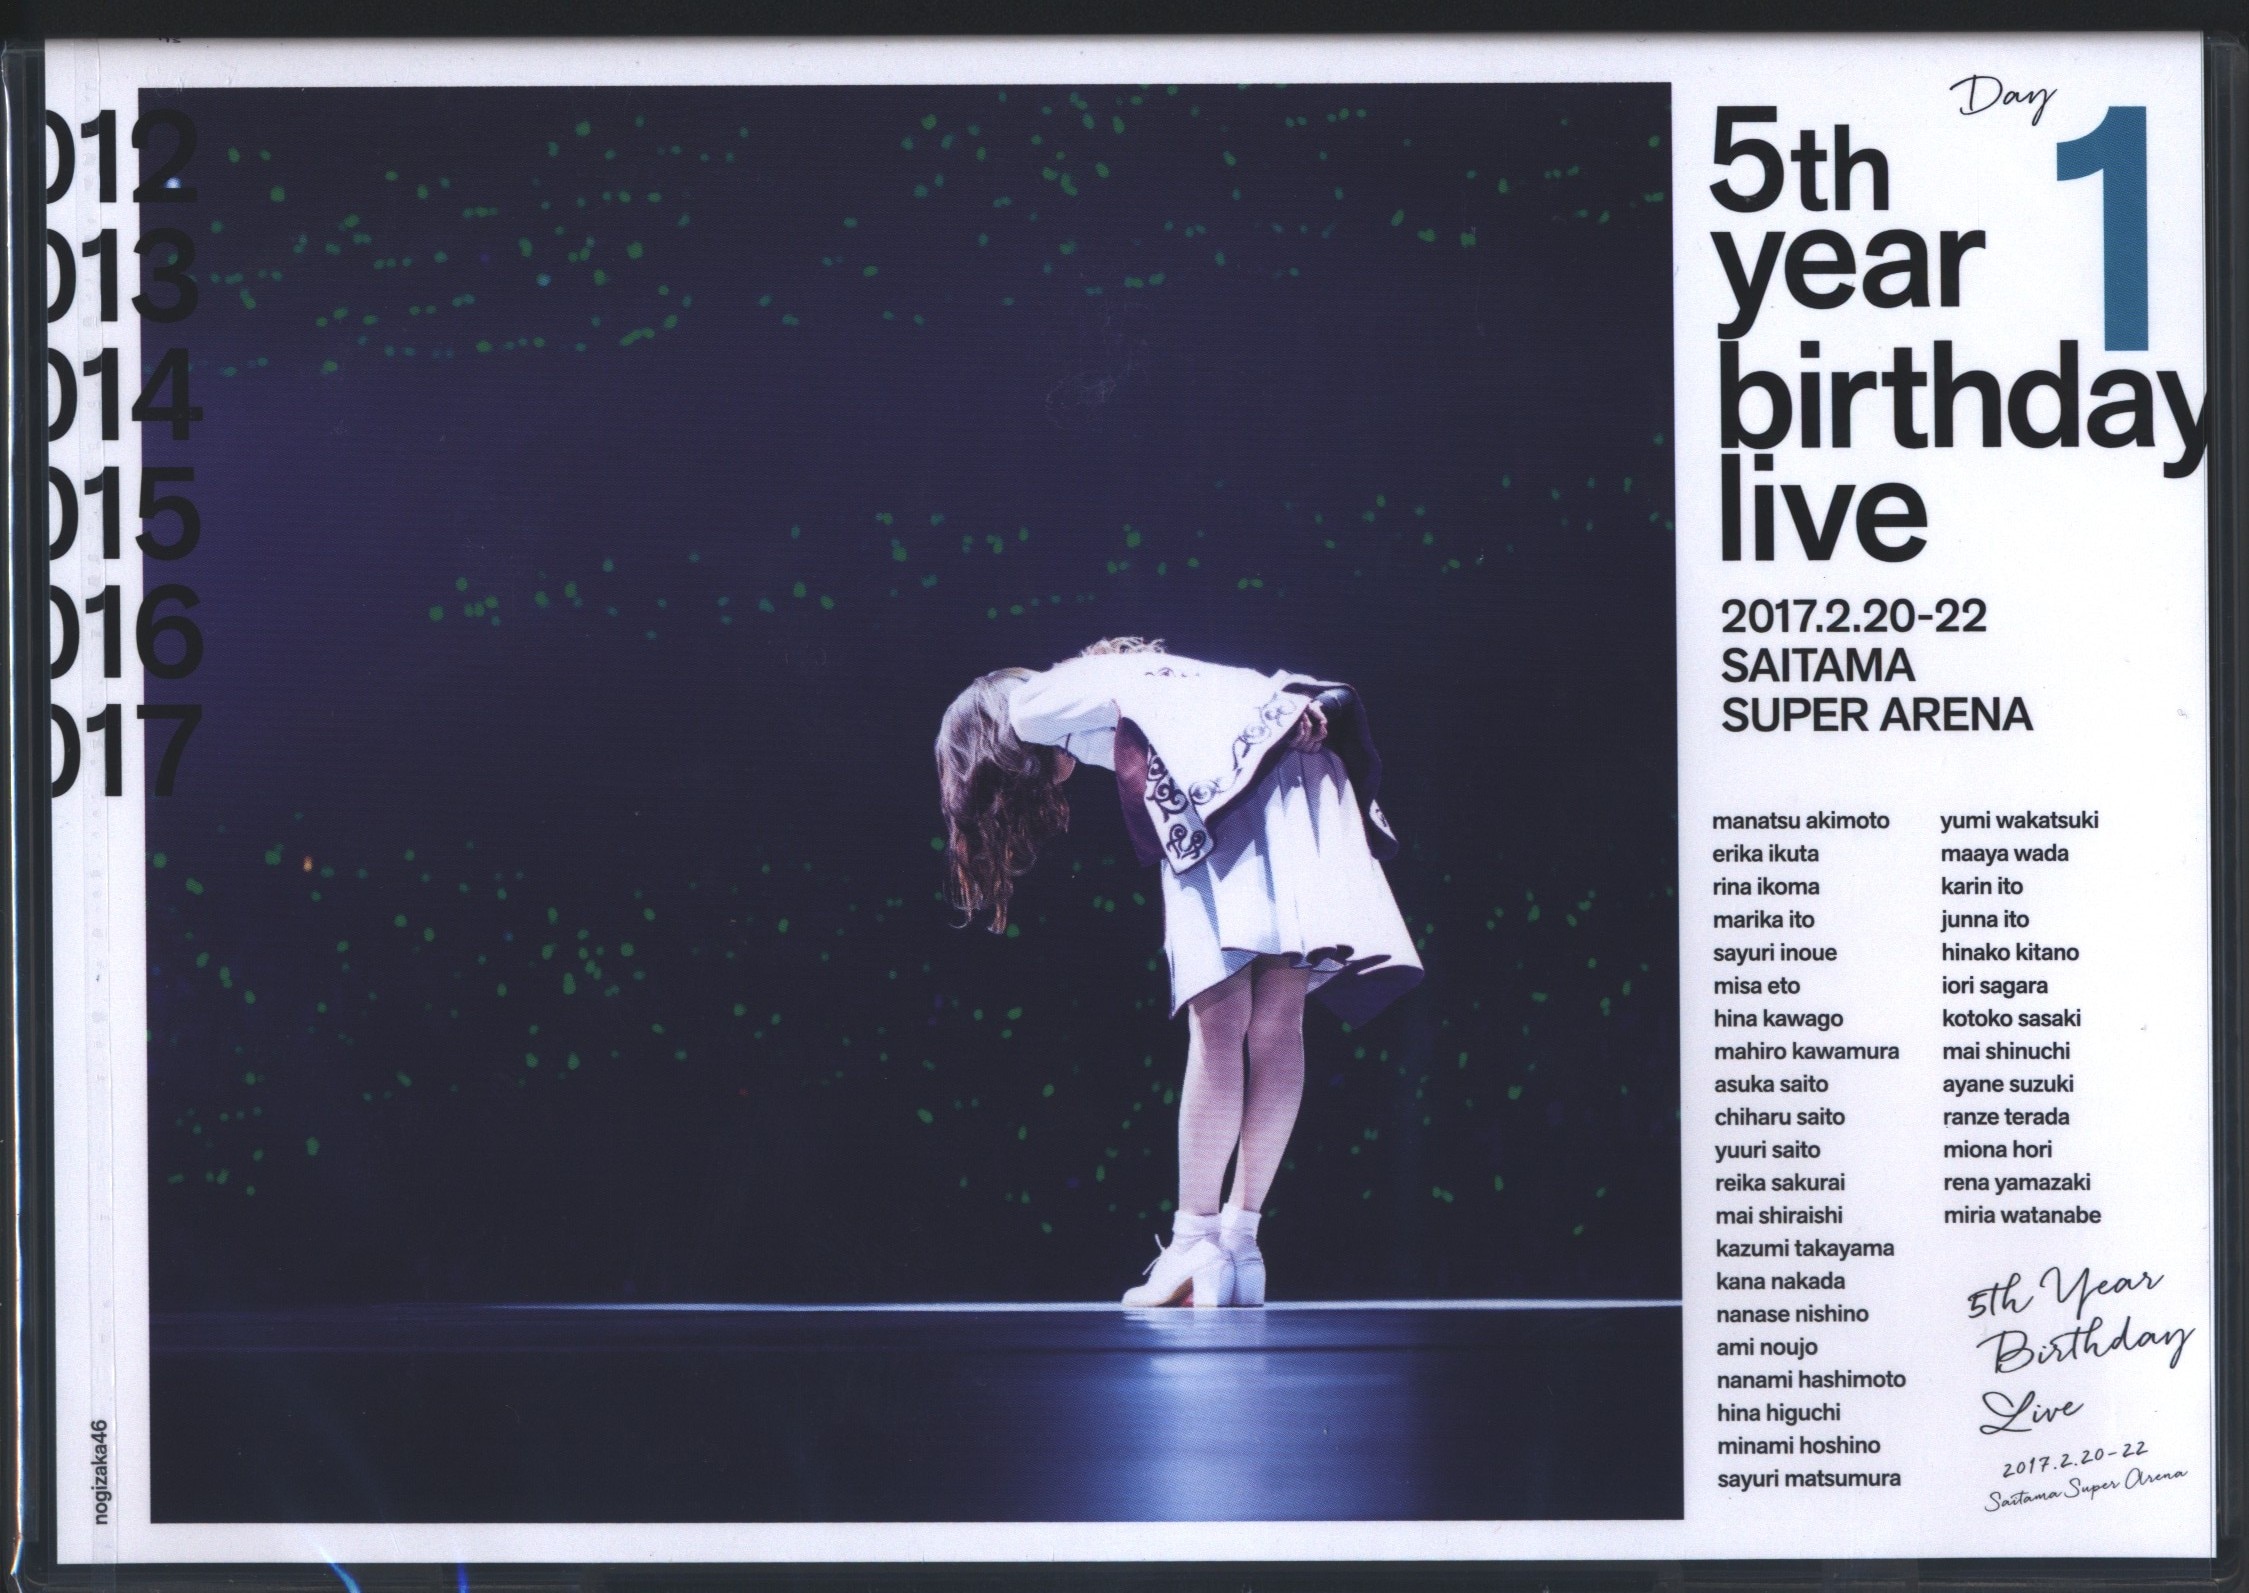 乃木坂46 5th YEAR BIRTHDAY LIVE 2017.2.20-22 SAITAMA SUPER ARENA Day1 |  MANDARAKE 在线商店